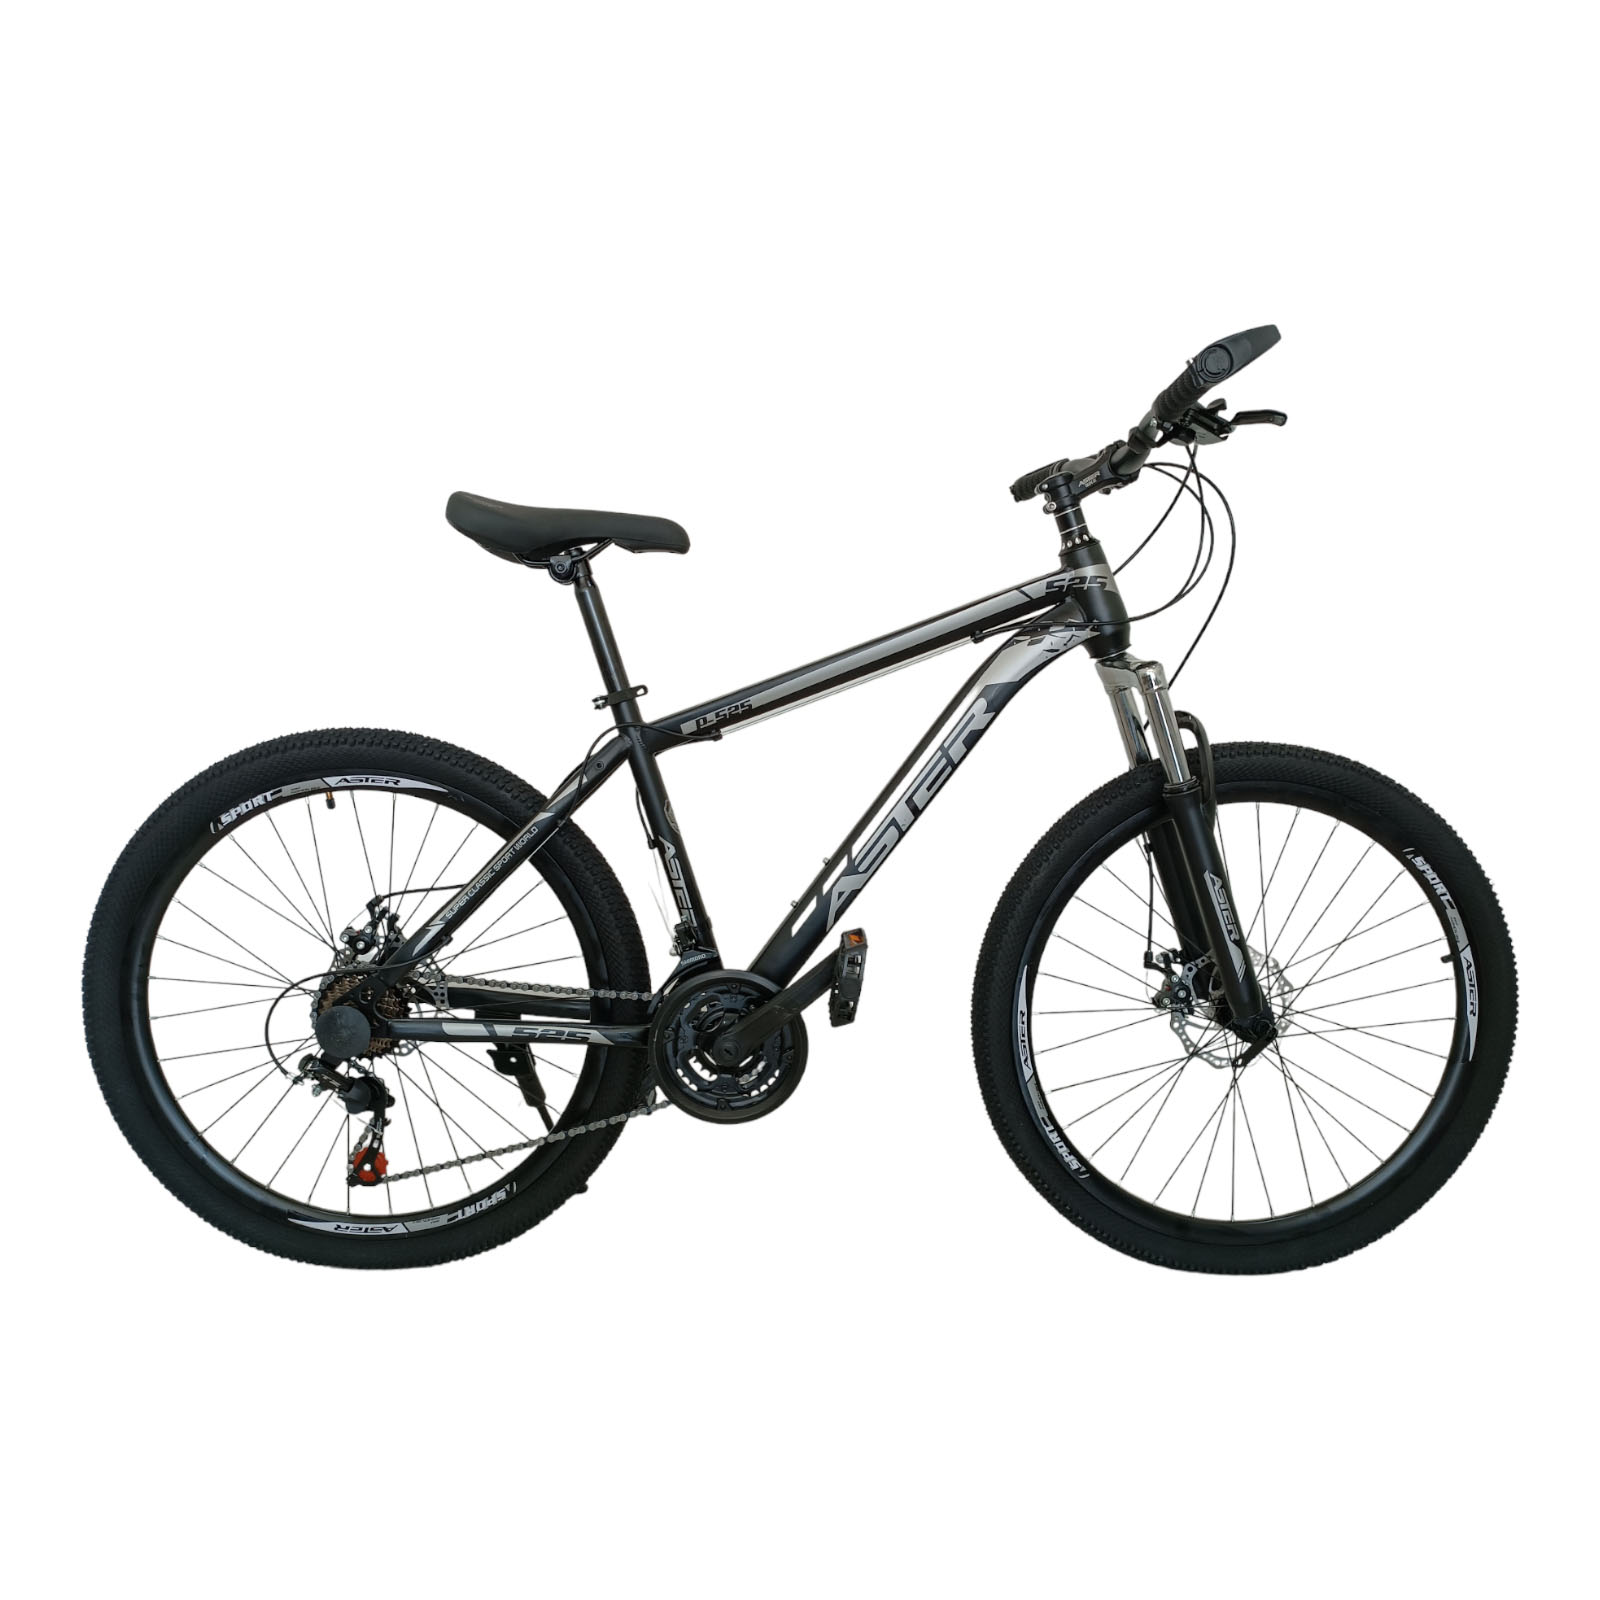 نکته خرید - قیمت روز دوچرخه کوهستان آستر مدل p525 سایز 26 خرید